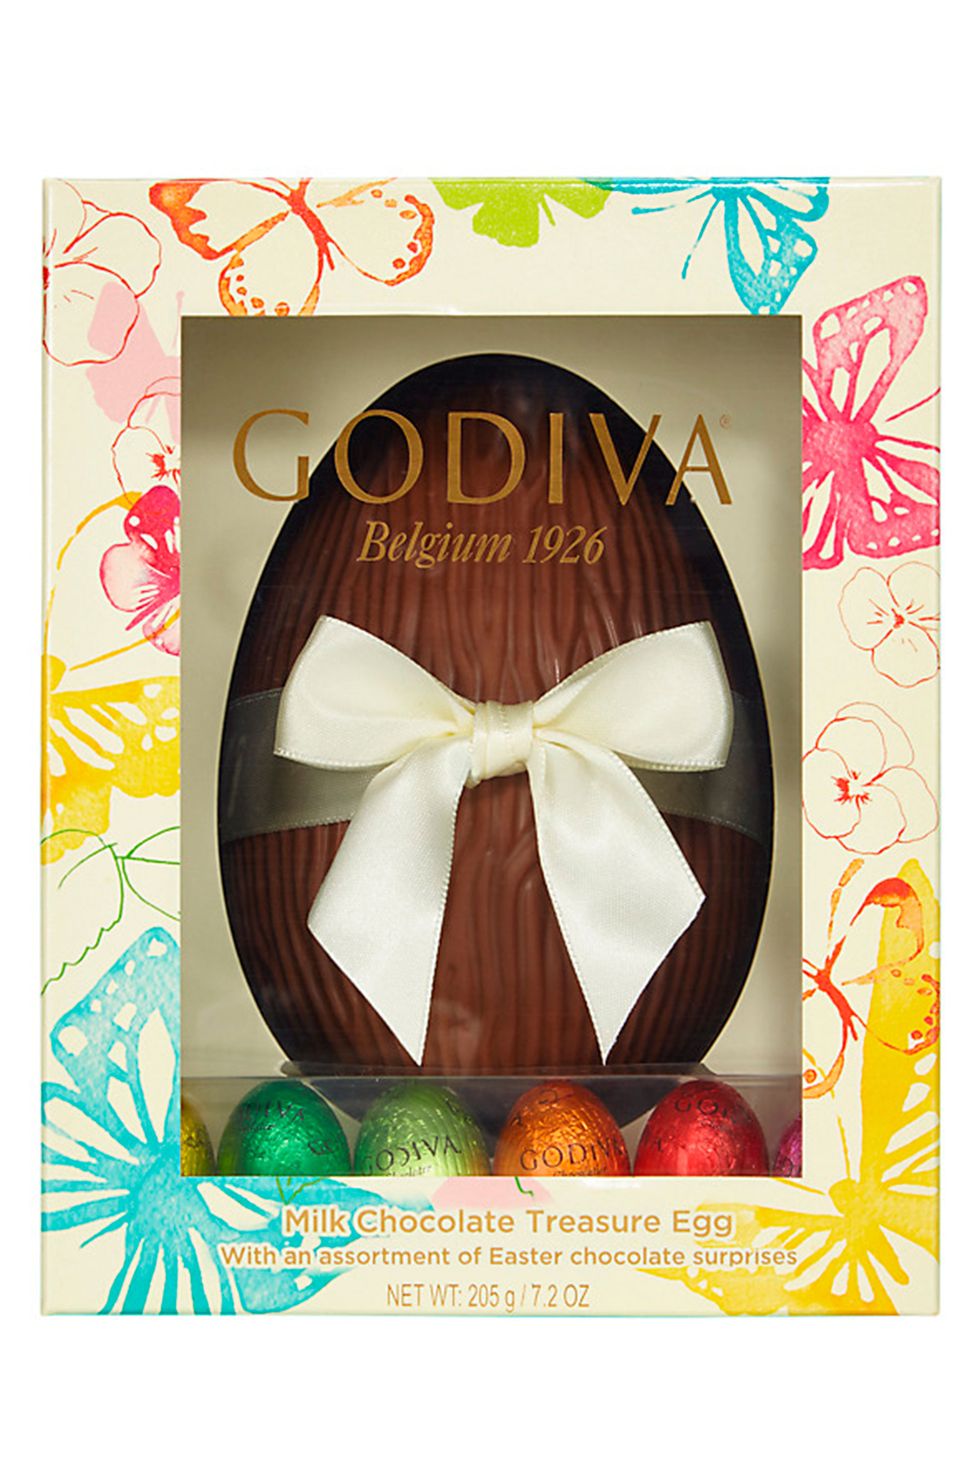 Best luxury easter eggs - Godiva Pixie easter egg